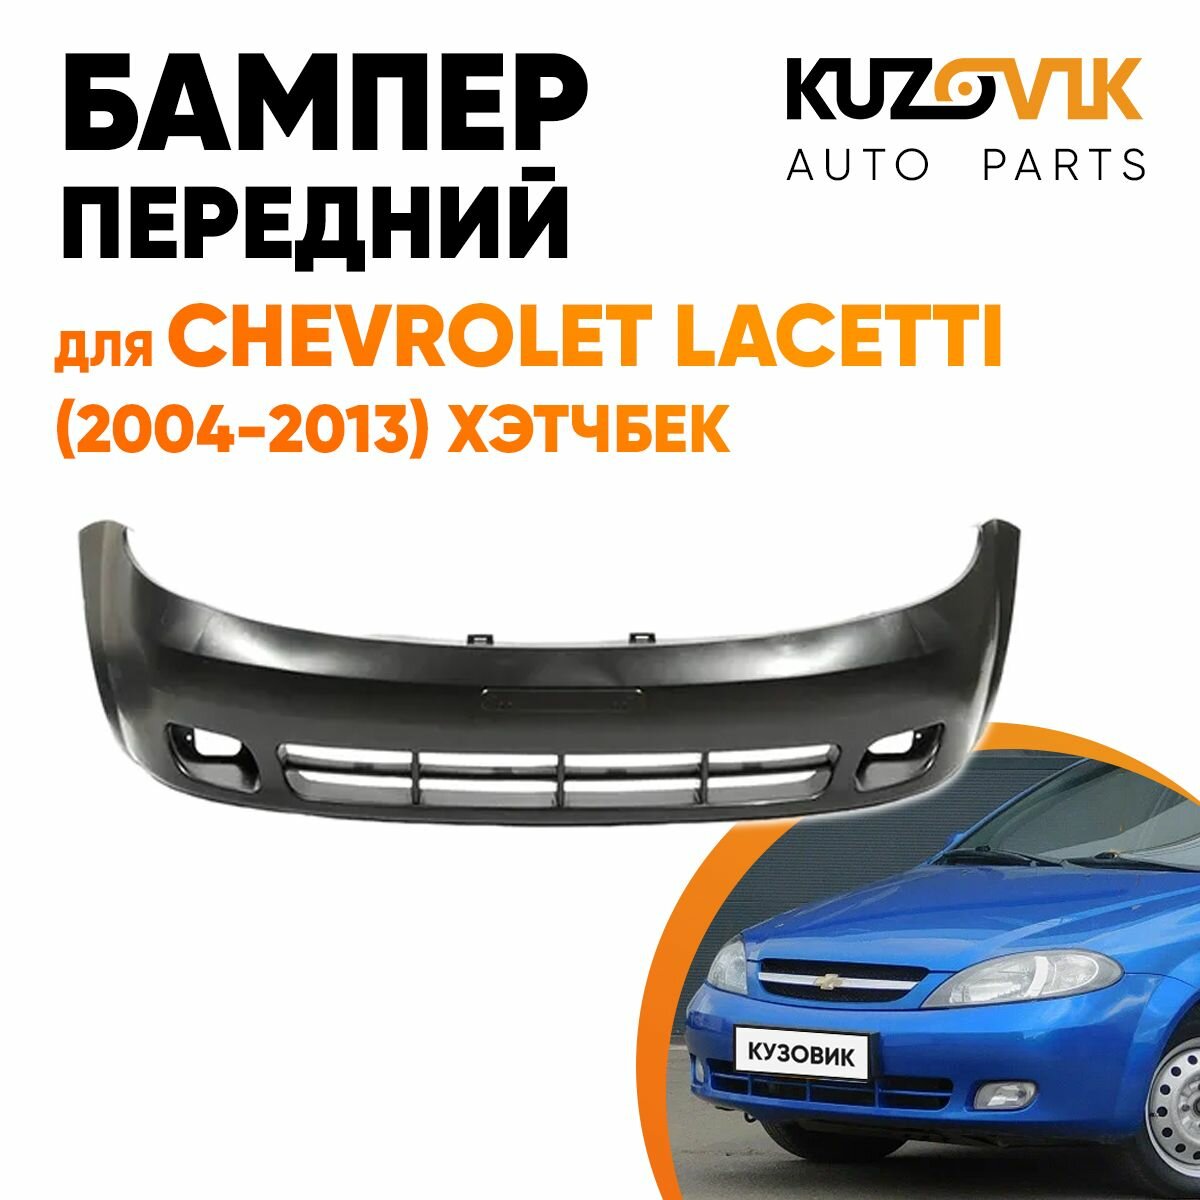 Бампер передний Chevrolet Lacetti (2004-2013) хэтчбек